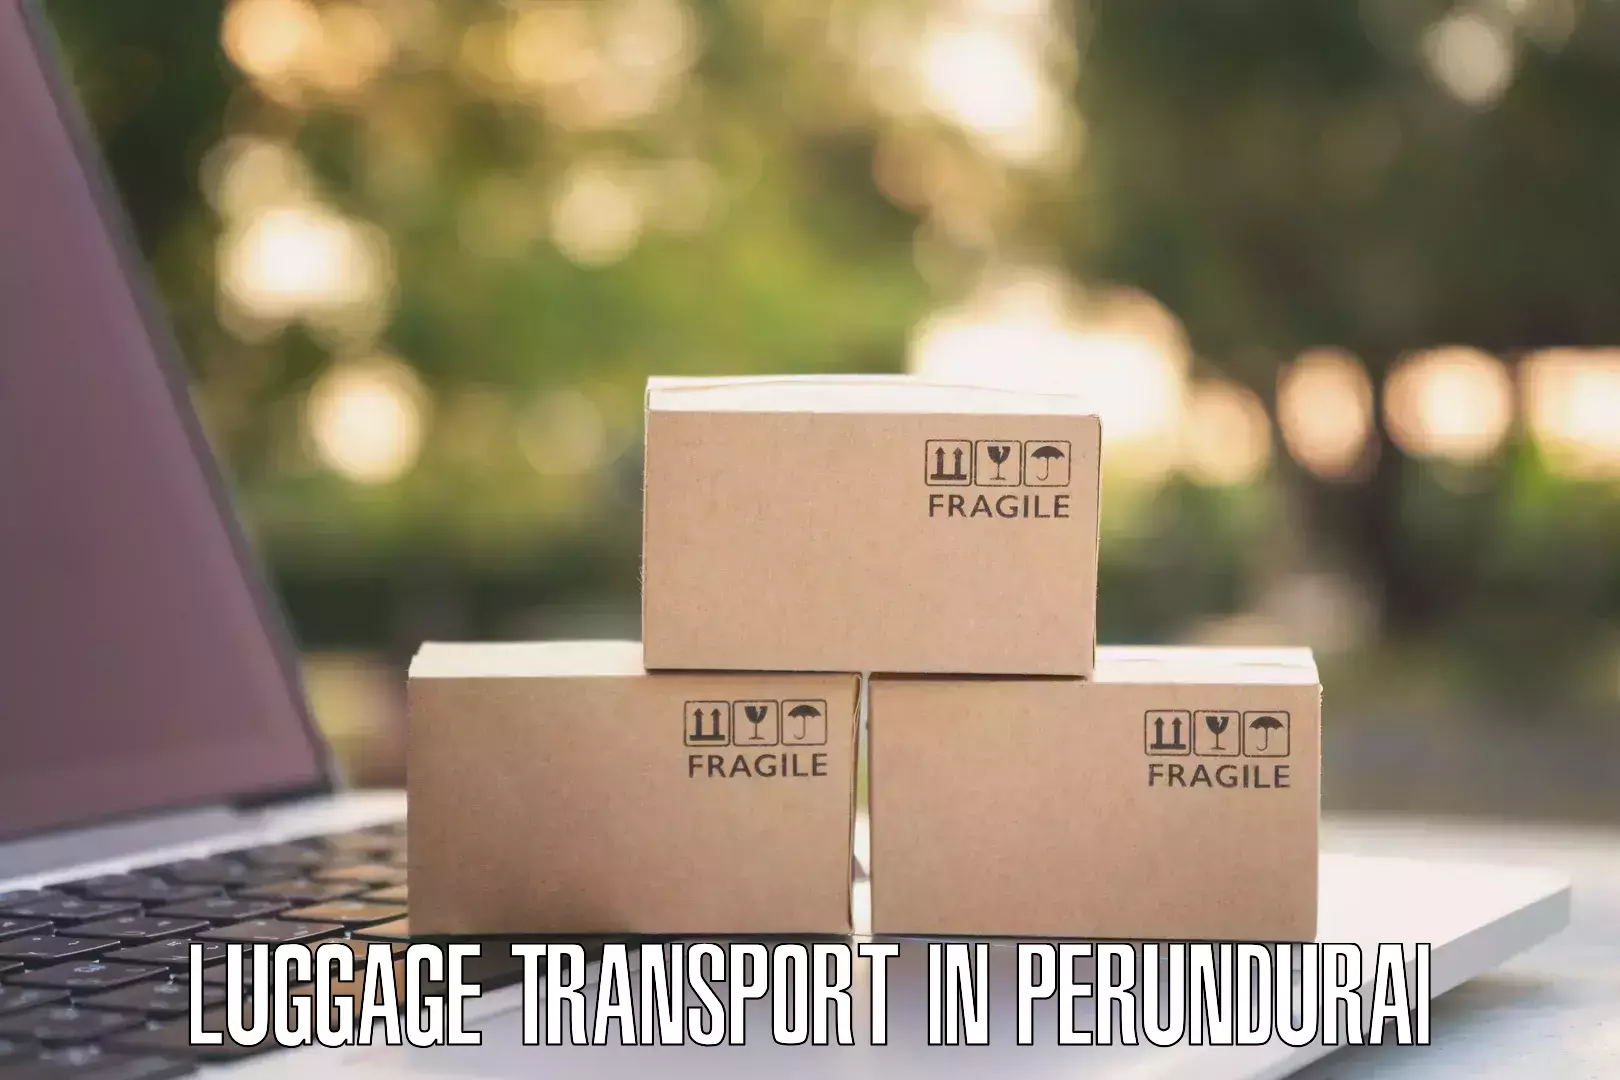 Nationwide luggage transport in Perundurai